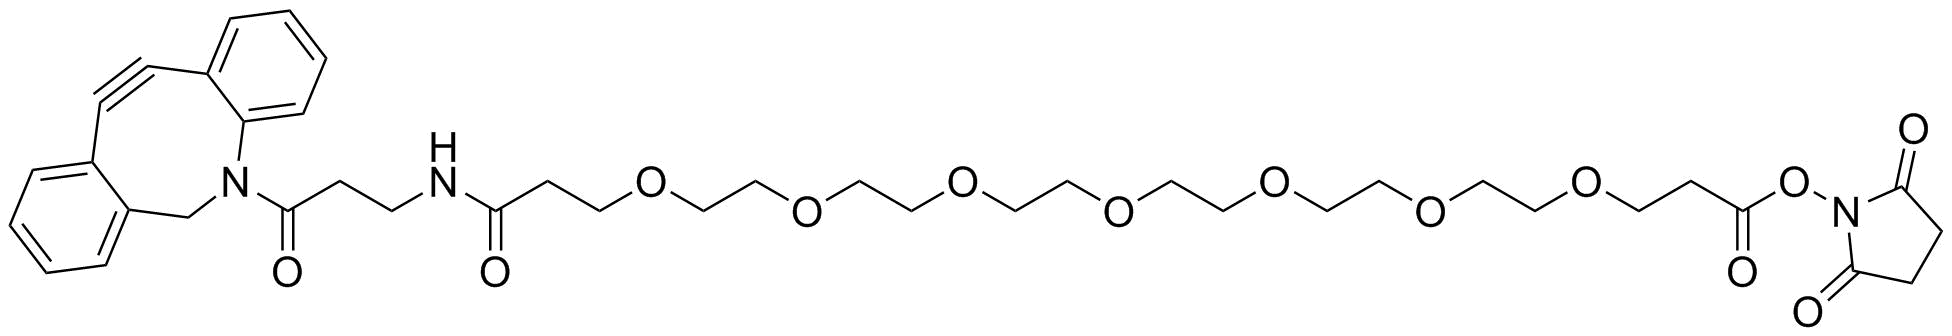 DBCO-NH-PEG7-NHS ester